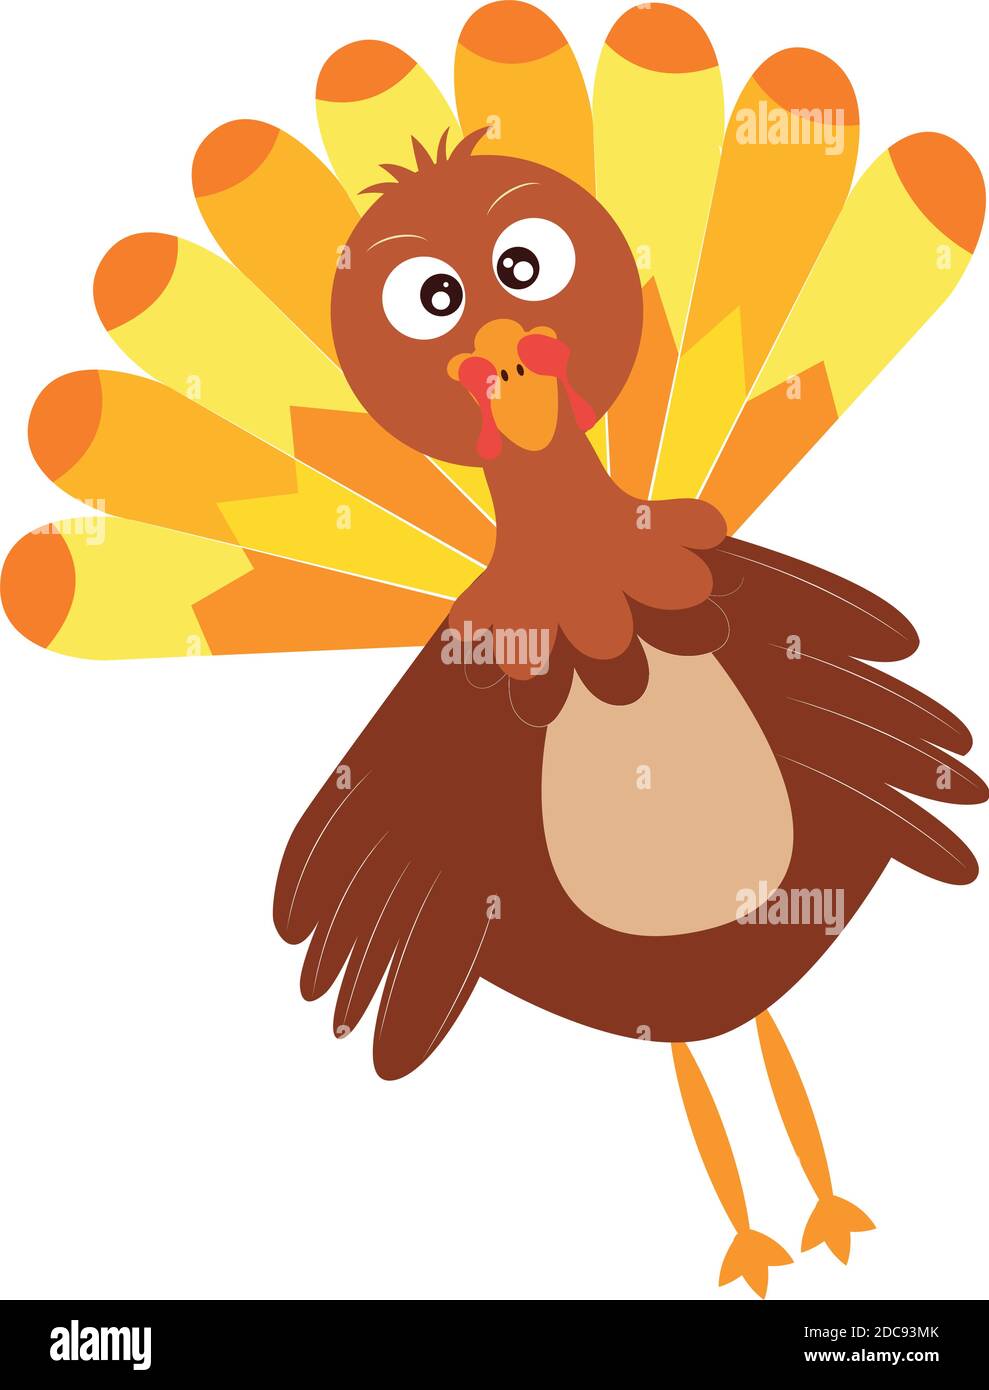 Cartoon of a turkey kawaii Stock Vector